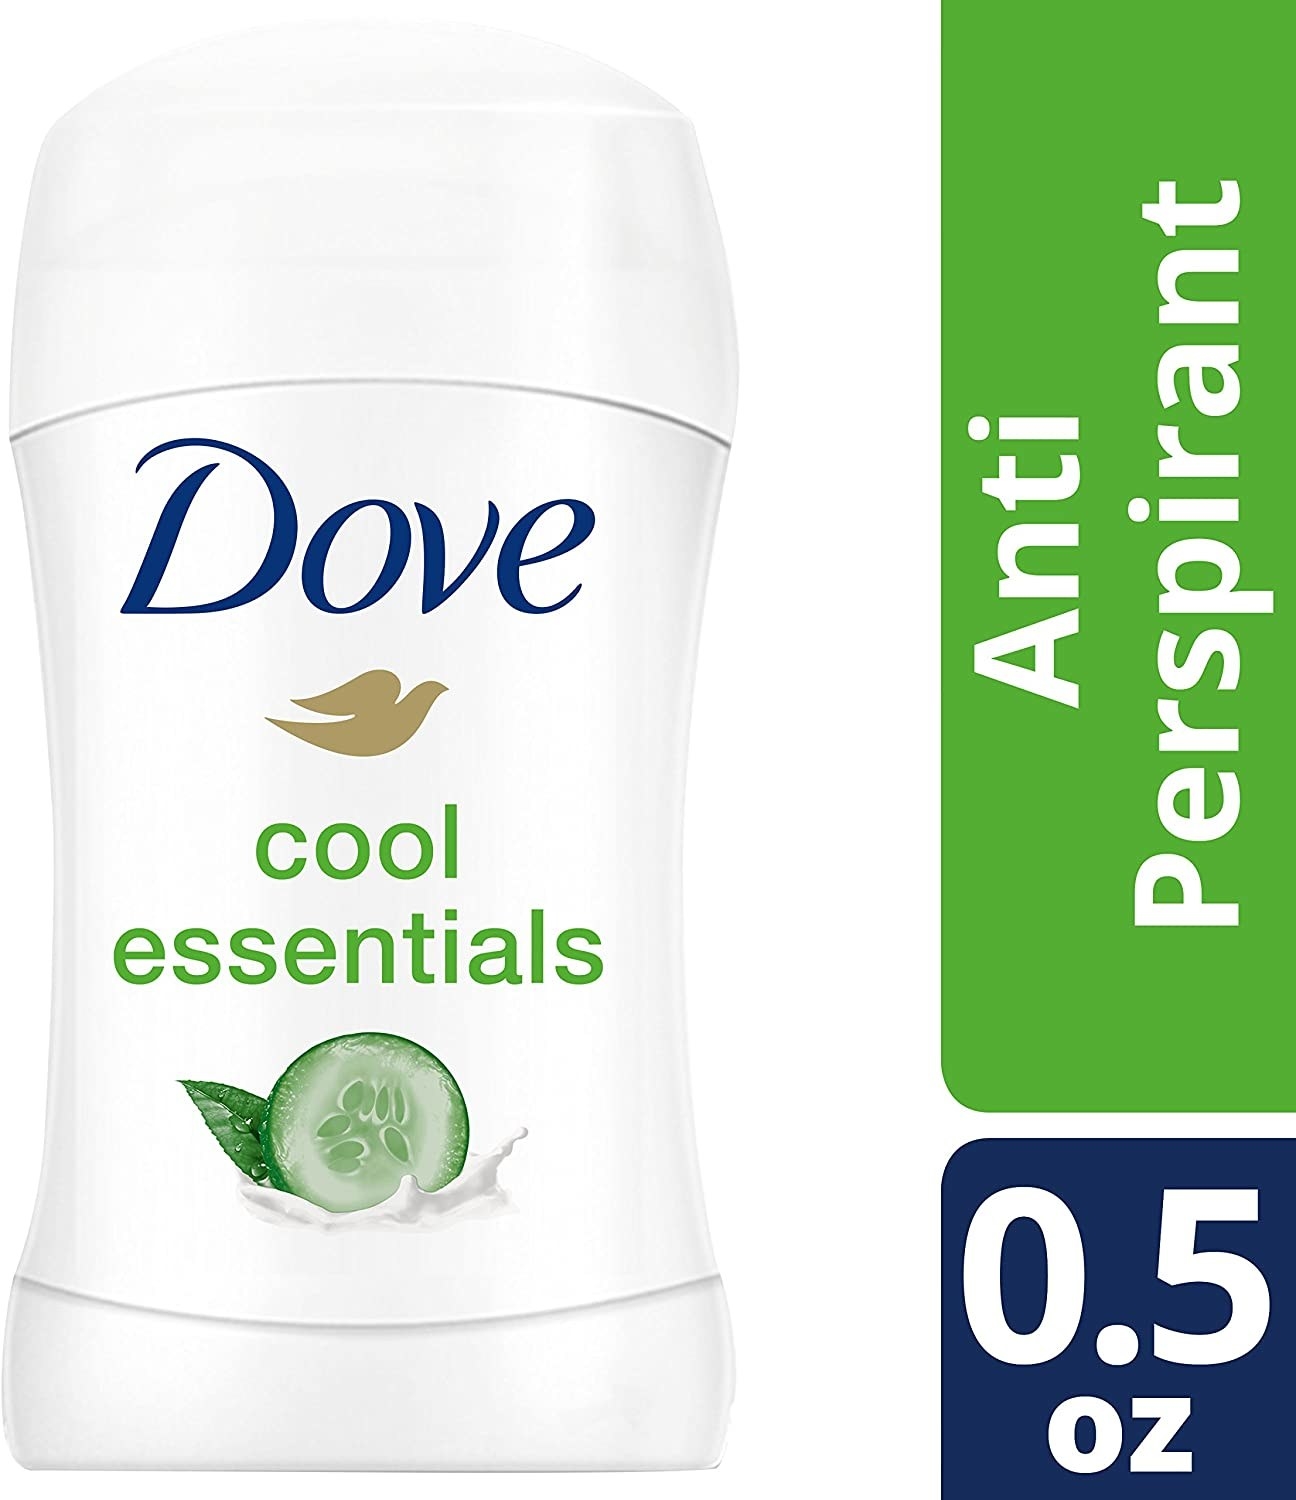 The deodorant in cool essentials scent